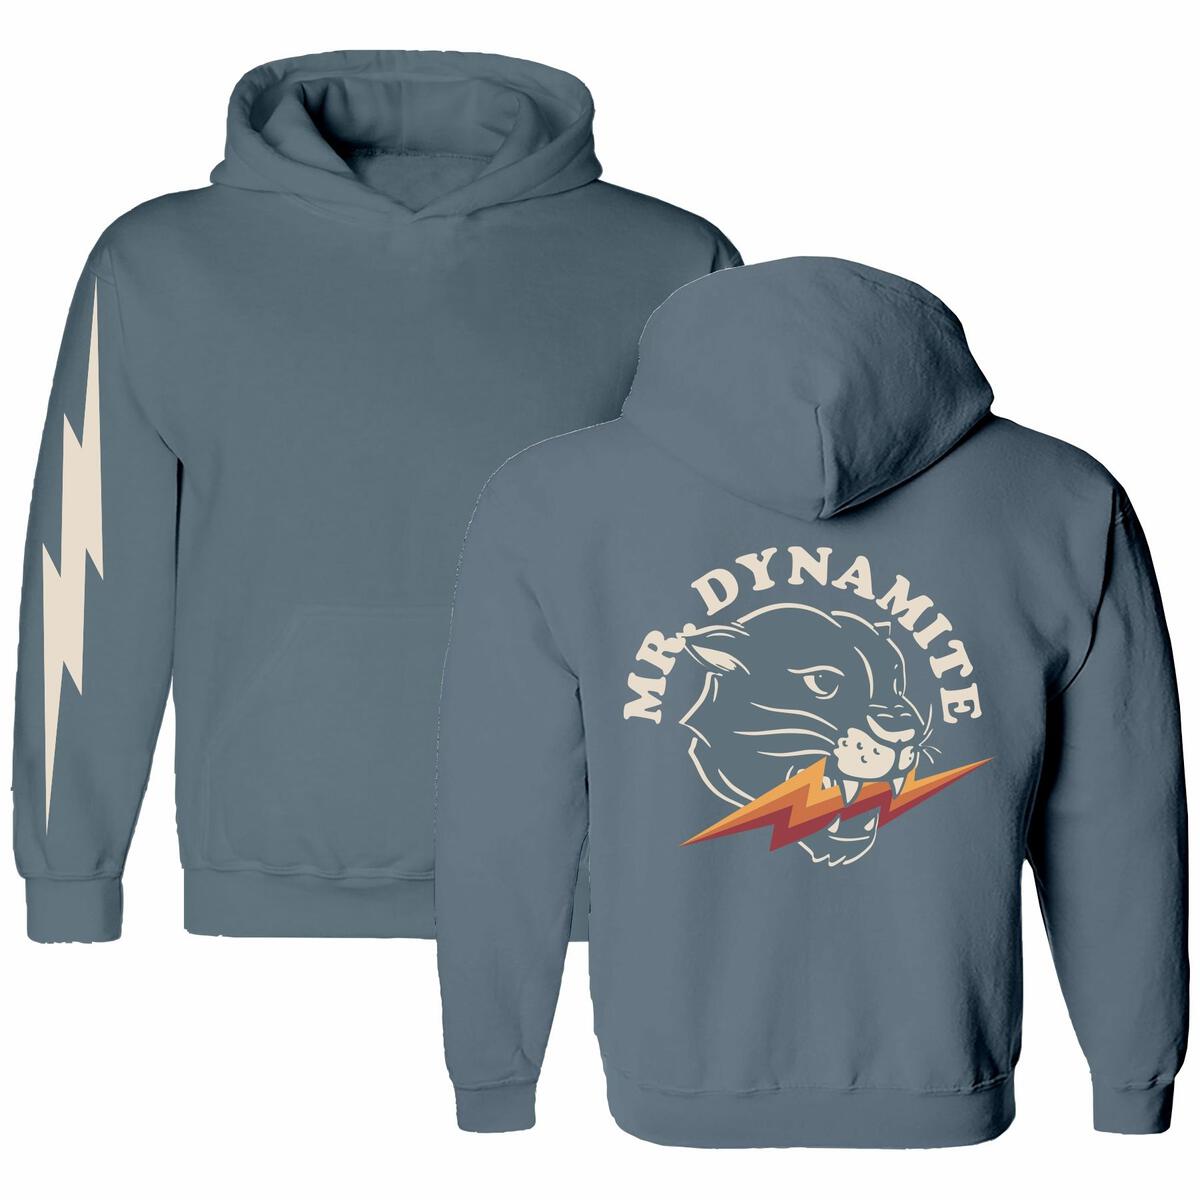 mr. dynamite hoodie